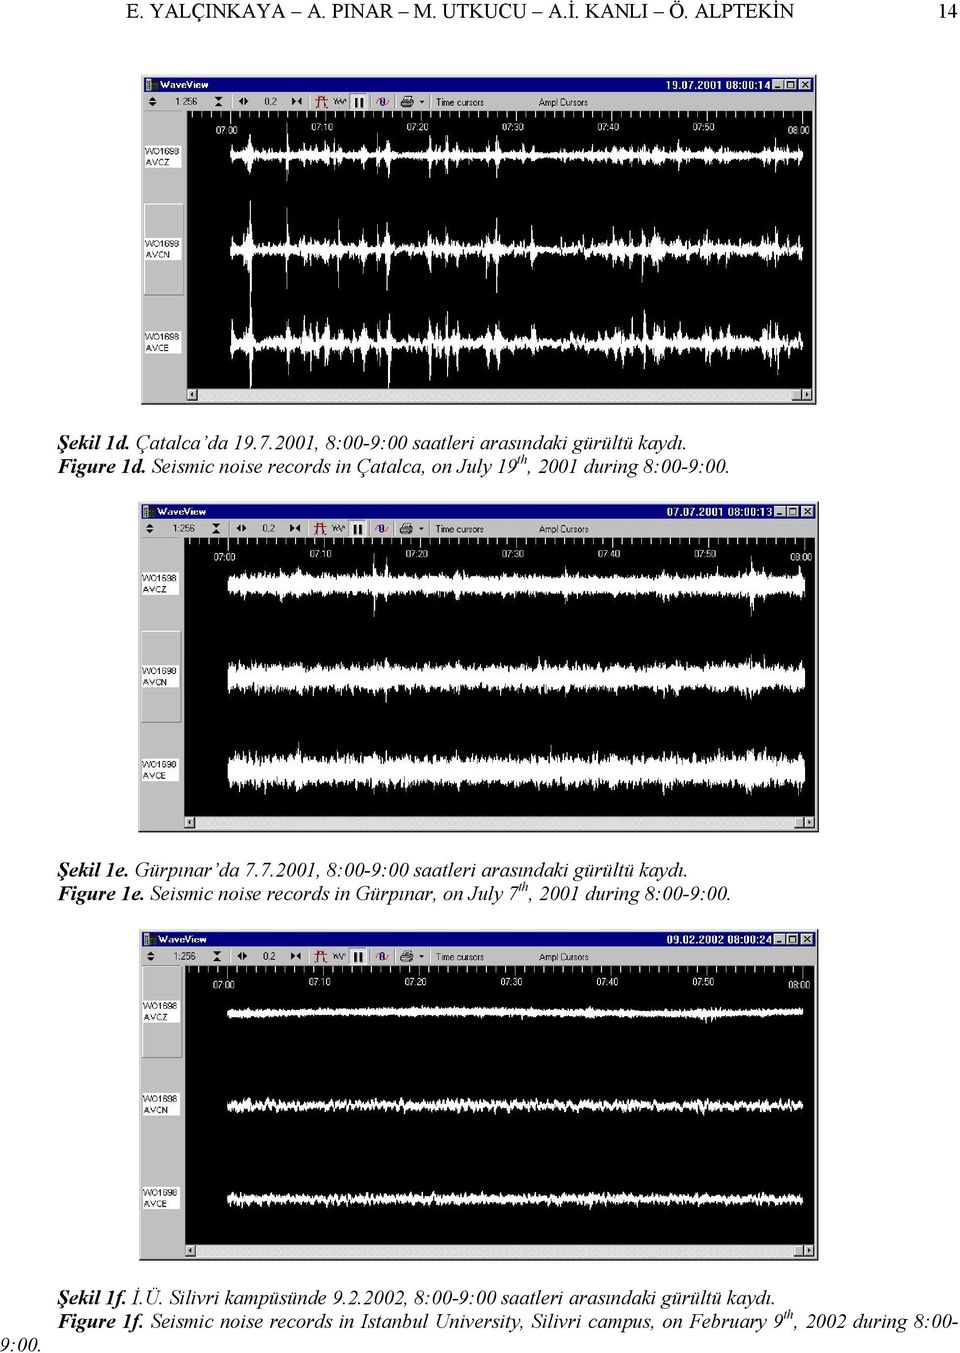 Figure 1e. Seismic noise records in Gürpınar, on July 7 th, 2001 during 8:00-9:00. 9:00. Şekil 1f. İ.Ü. Silivri kampüsünde 9.2.2002, 8:00-9:00 saatleri arasındaki gürültü kaydı.